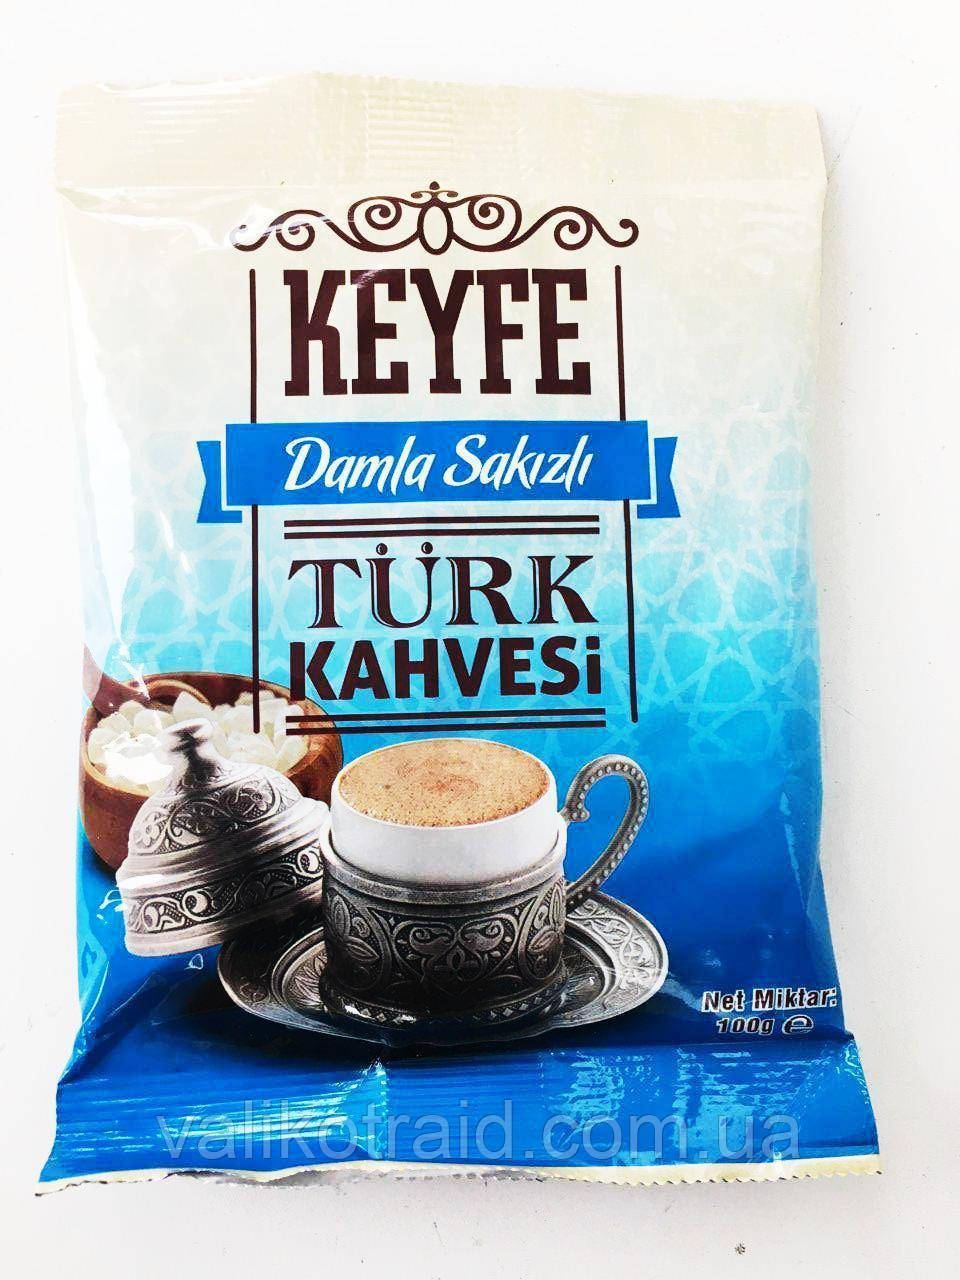 Кава турецький з добавкою мастичного дерева "Dunyasi Кeyfe turk kahvesi" Damla Sakizli, 100 гр, Туреччина